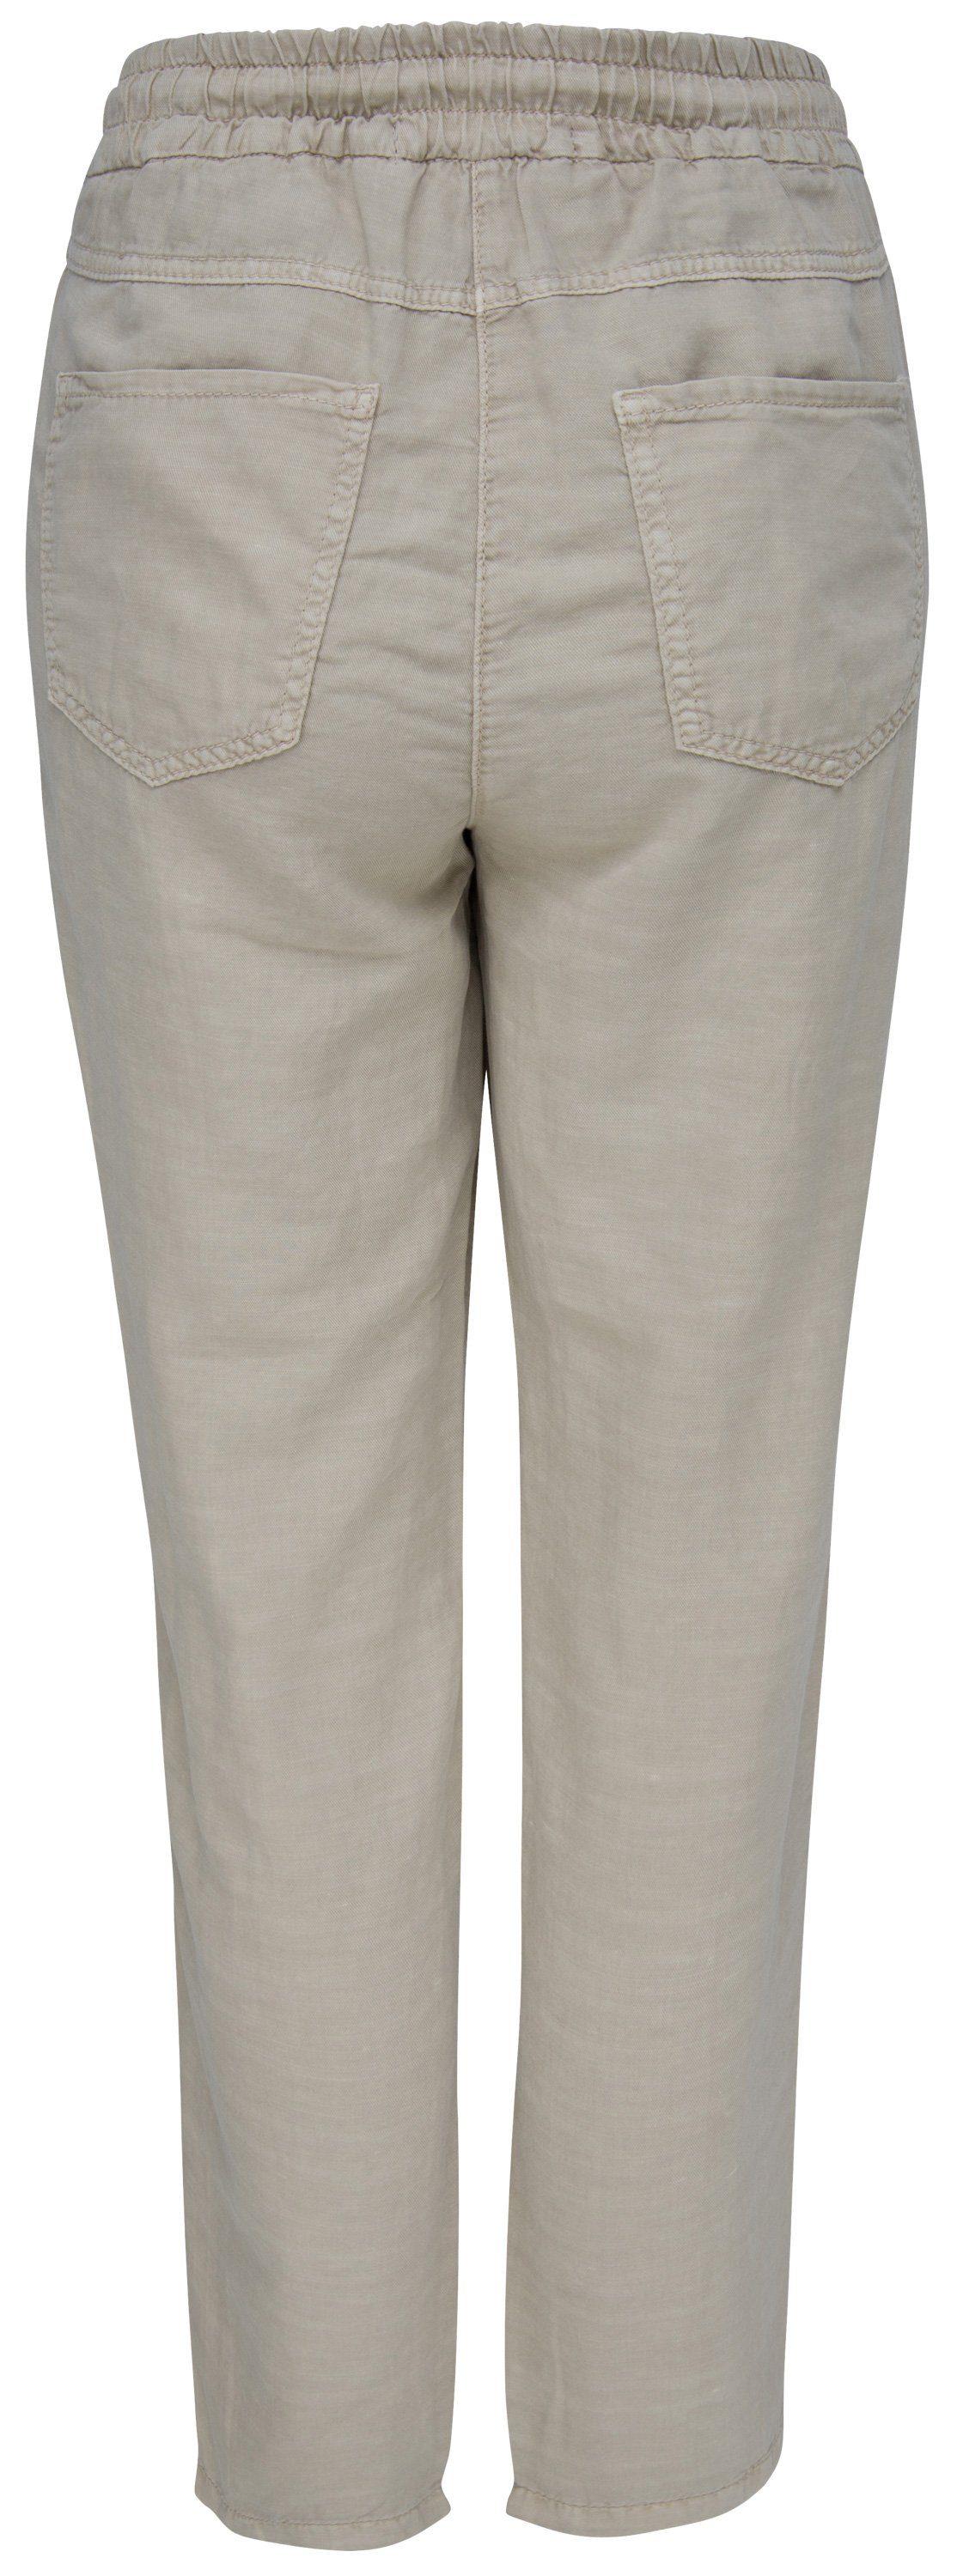 MAC chino MAC beige light Stretch-Jeans 2786-00-0214L-214R EASY